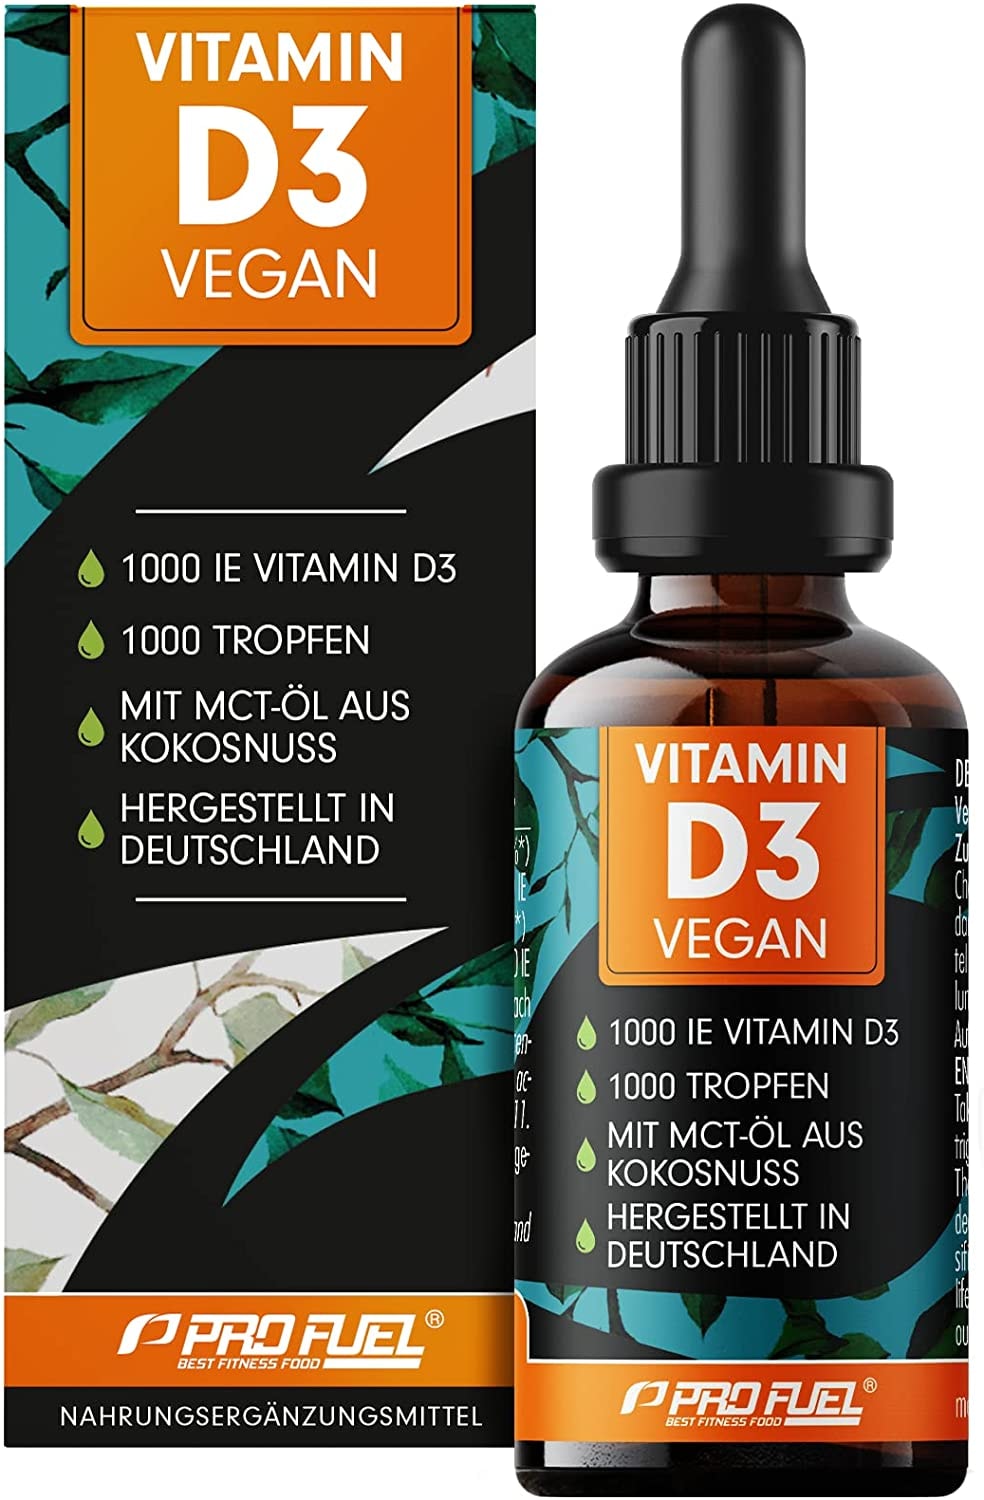 ProFuel Vitamin D3 vegan - 1000 Tropfen (30ml) - 1000 IE Vitamin D3 pro Tag - optimal hochdosiert und bioverfügbar - 100% pflanzliches Vitamin D3 aus Flechten - laborgeprüft, in Deutschland produziert